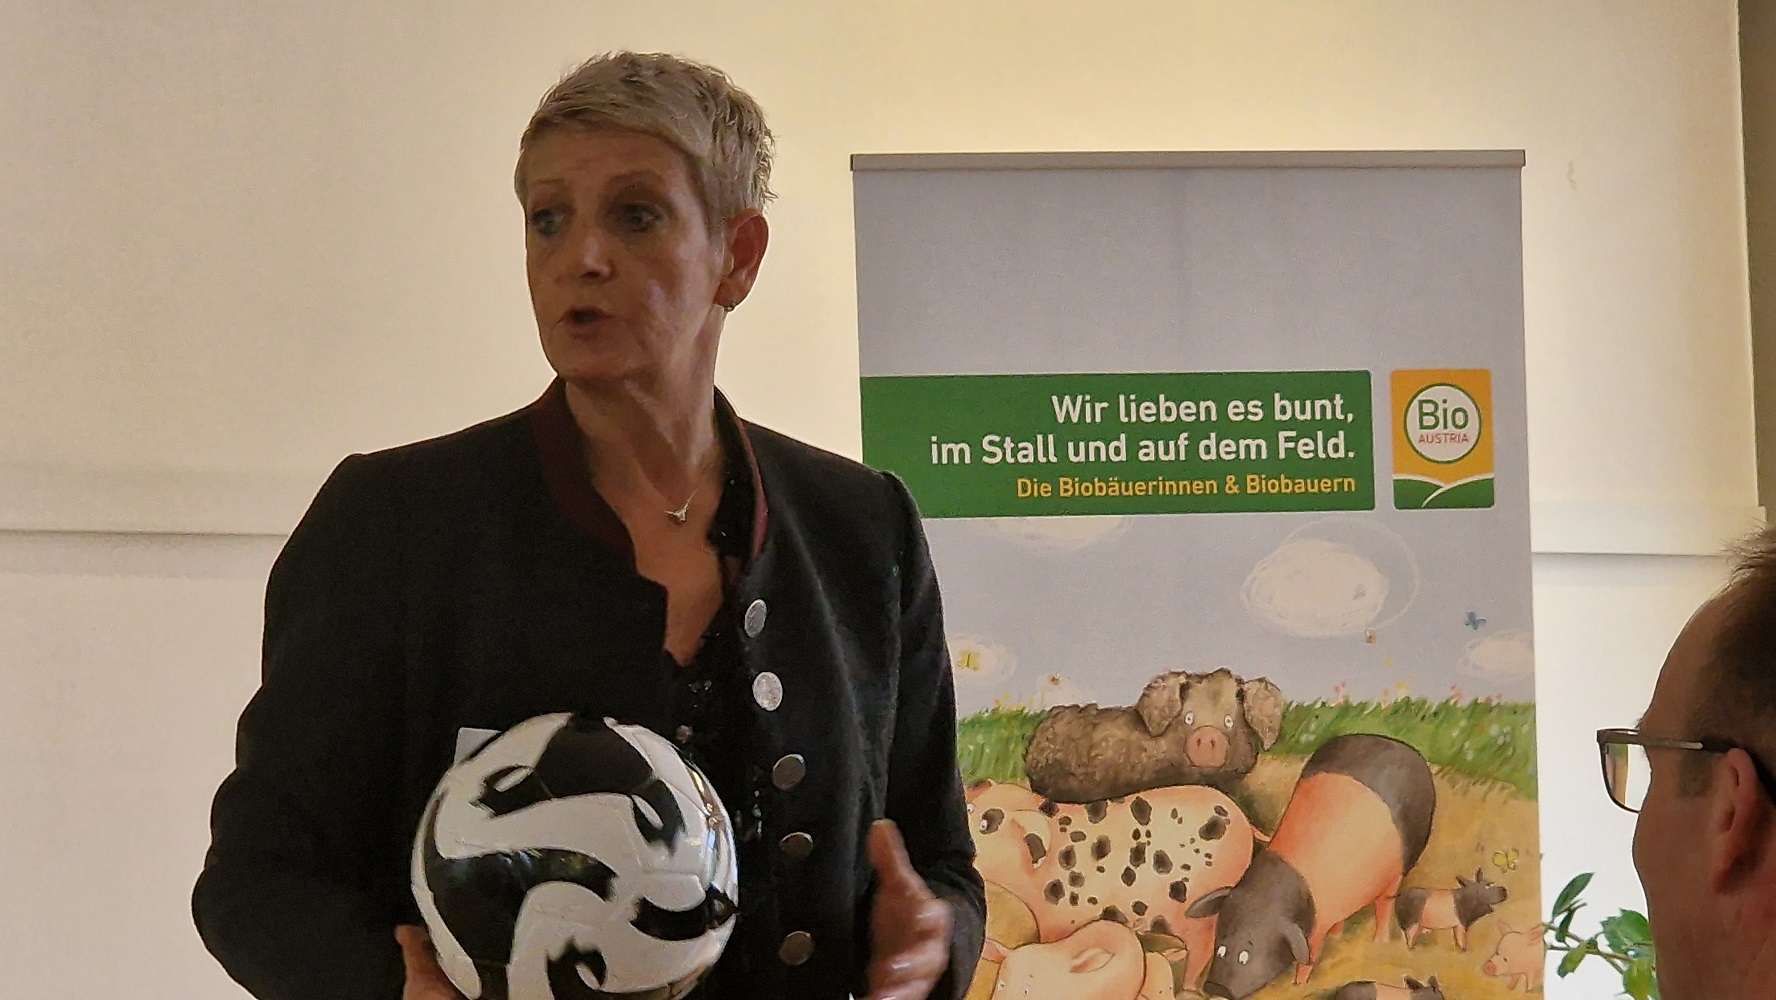 Erfolgs- und Menthaltrainerin E. Pelz-Thaller motiviert die Biobauern und Bäuerinnen beim Schweinetag der BioAustria Bauerntage, ihren Erfolg selbst in die Hand zu nehmen. 